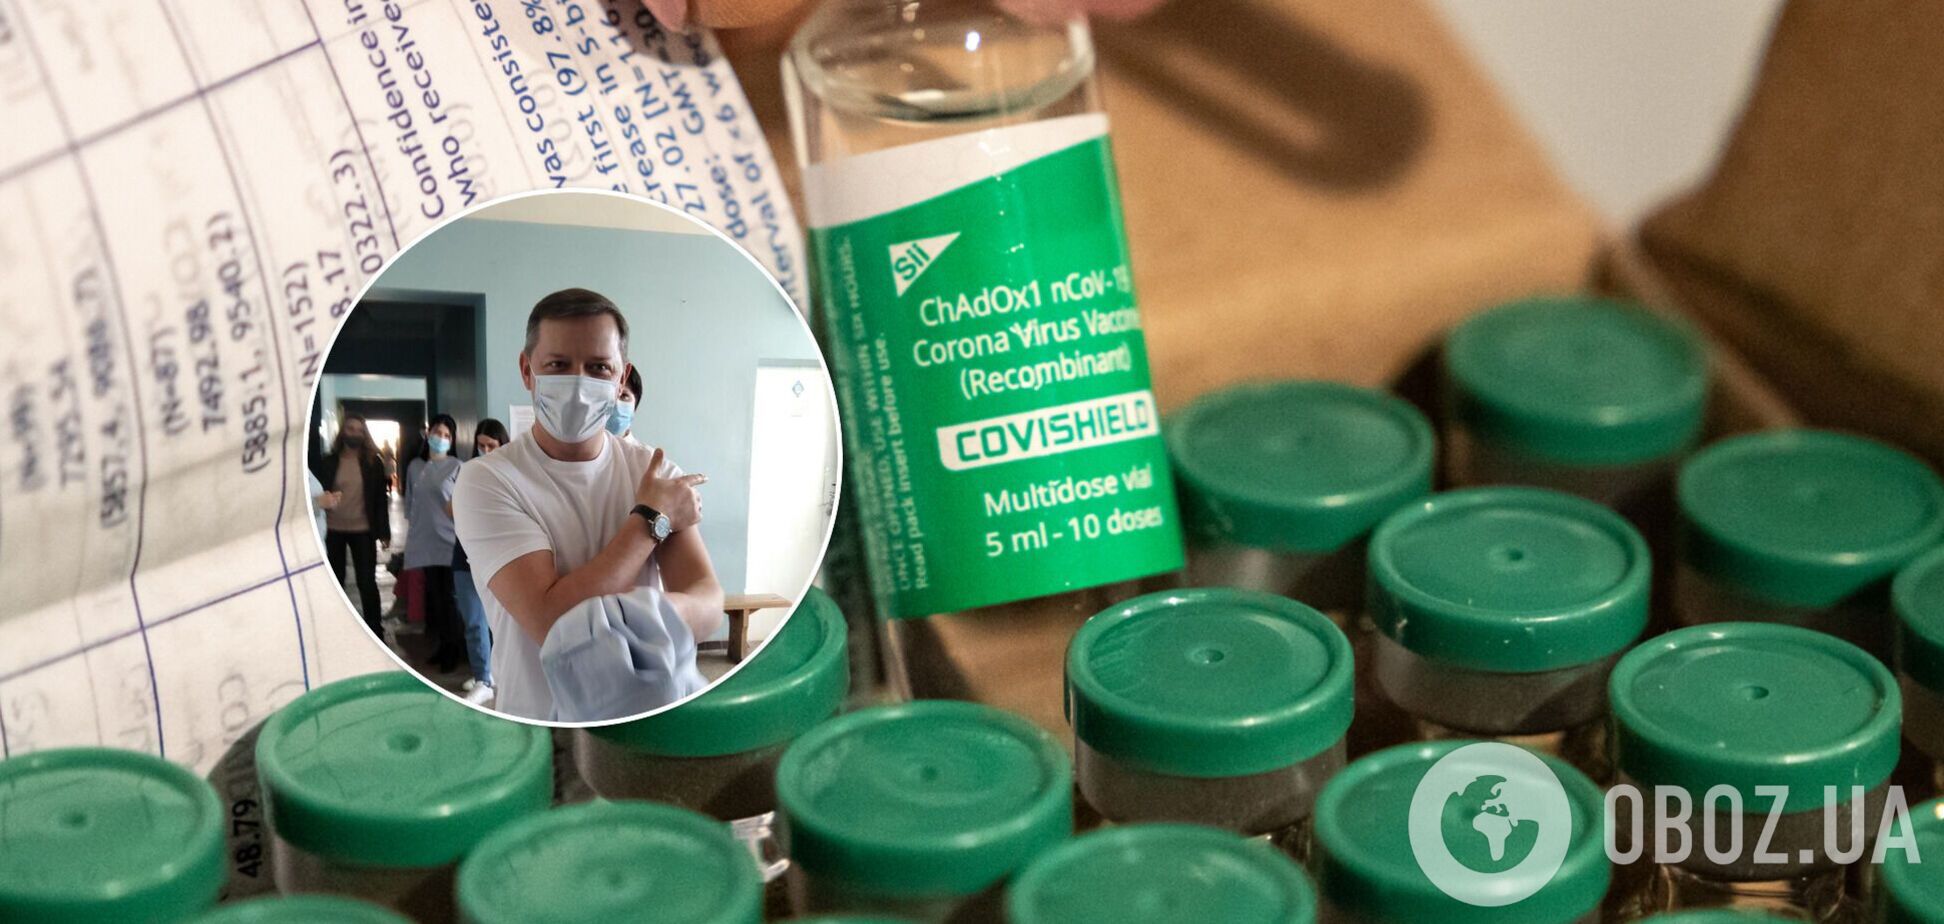 Олег Ляшко сделал прививку препаратом CoviShield, который ранее называл 'хламом'. Видео